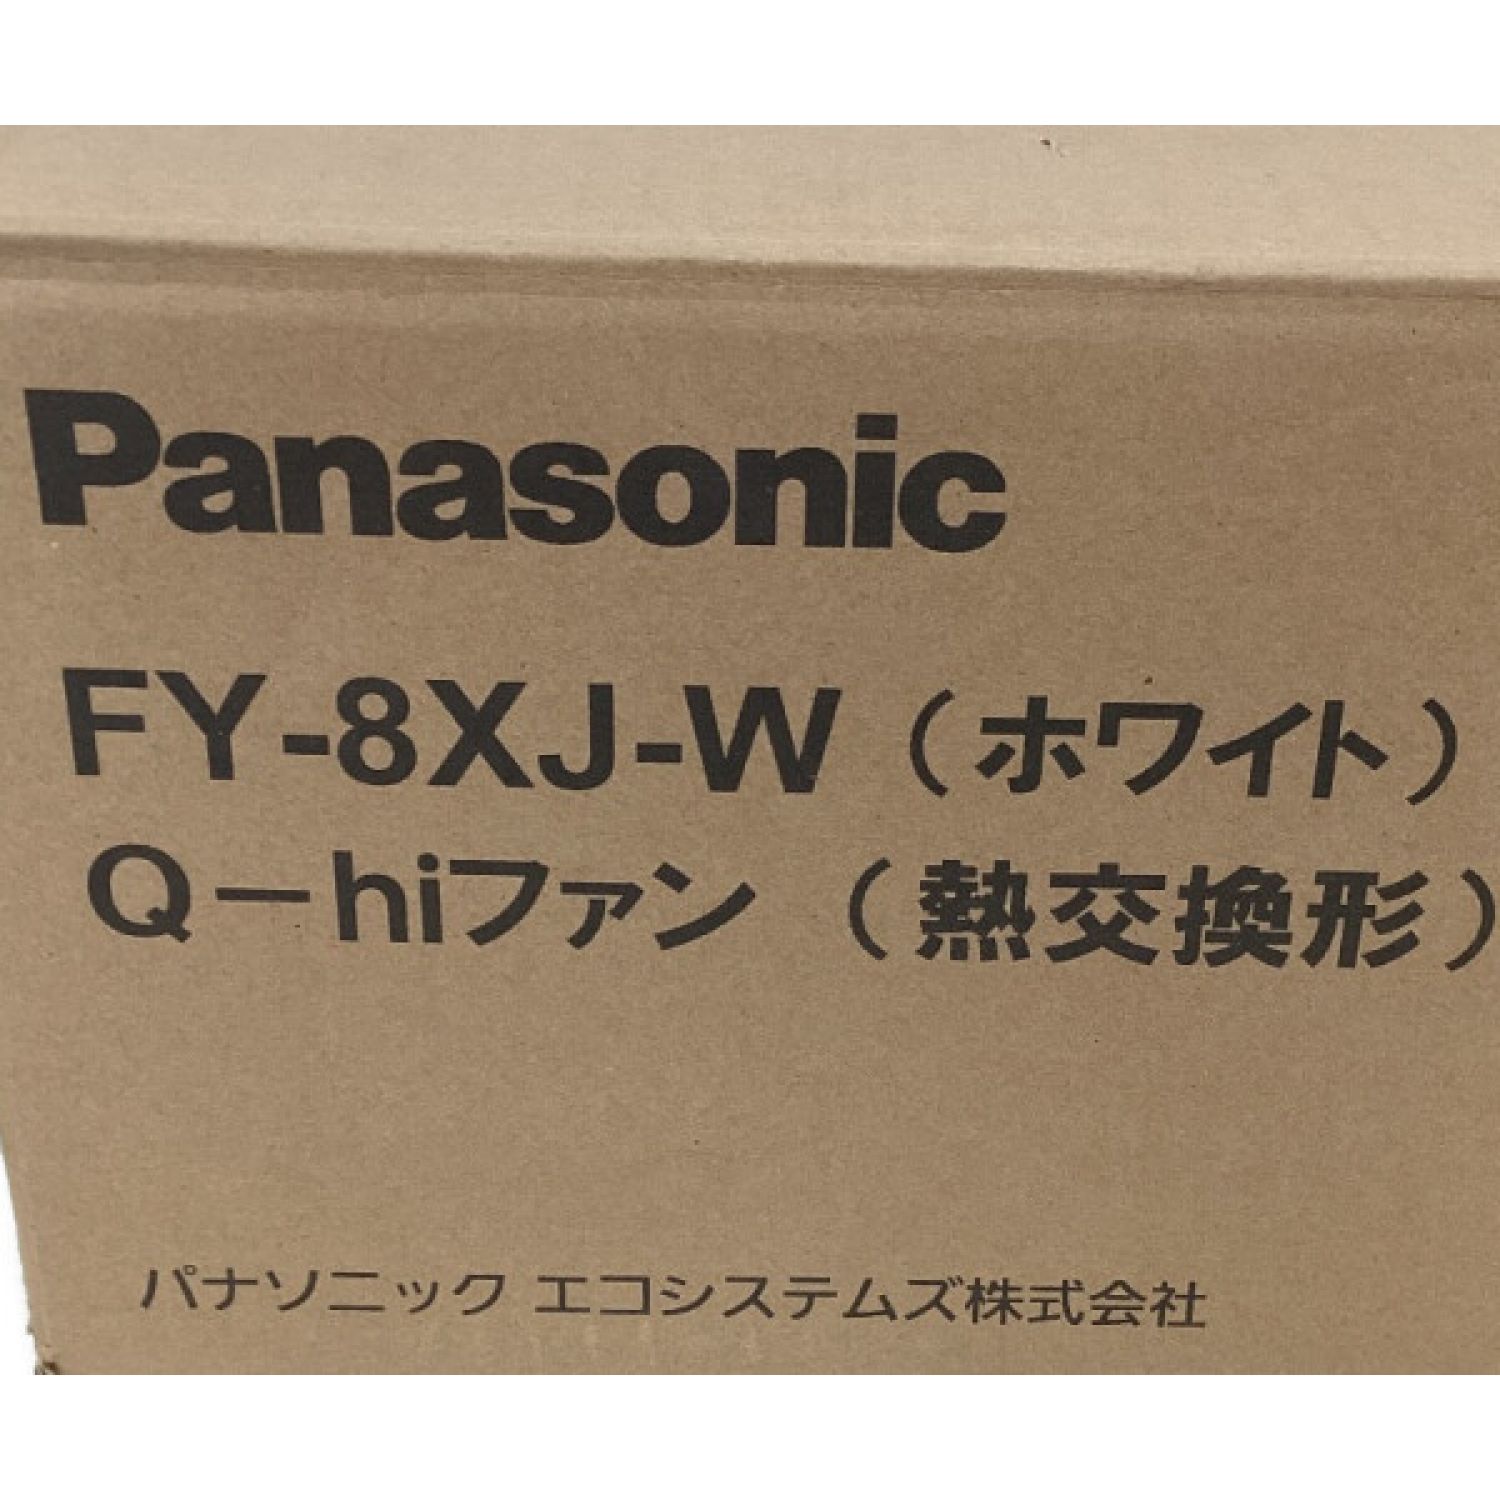 再入荷】 Panasonic Q-hiファン 熱交換形 FY-6WJ